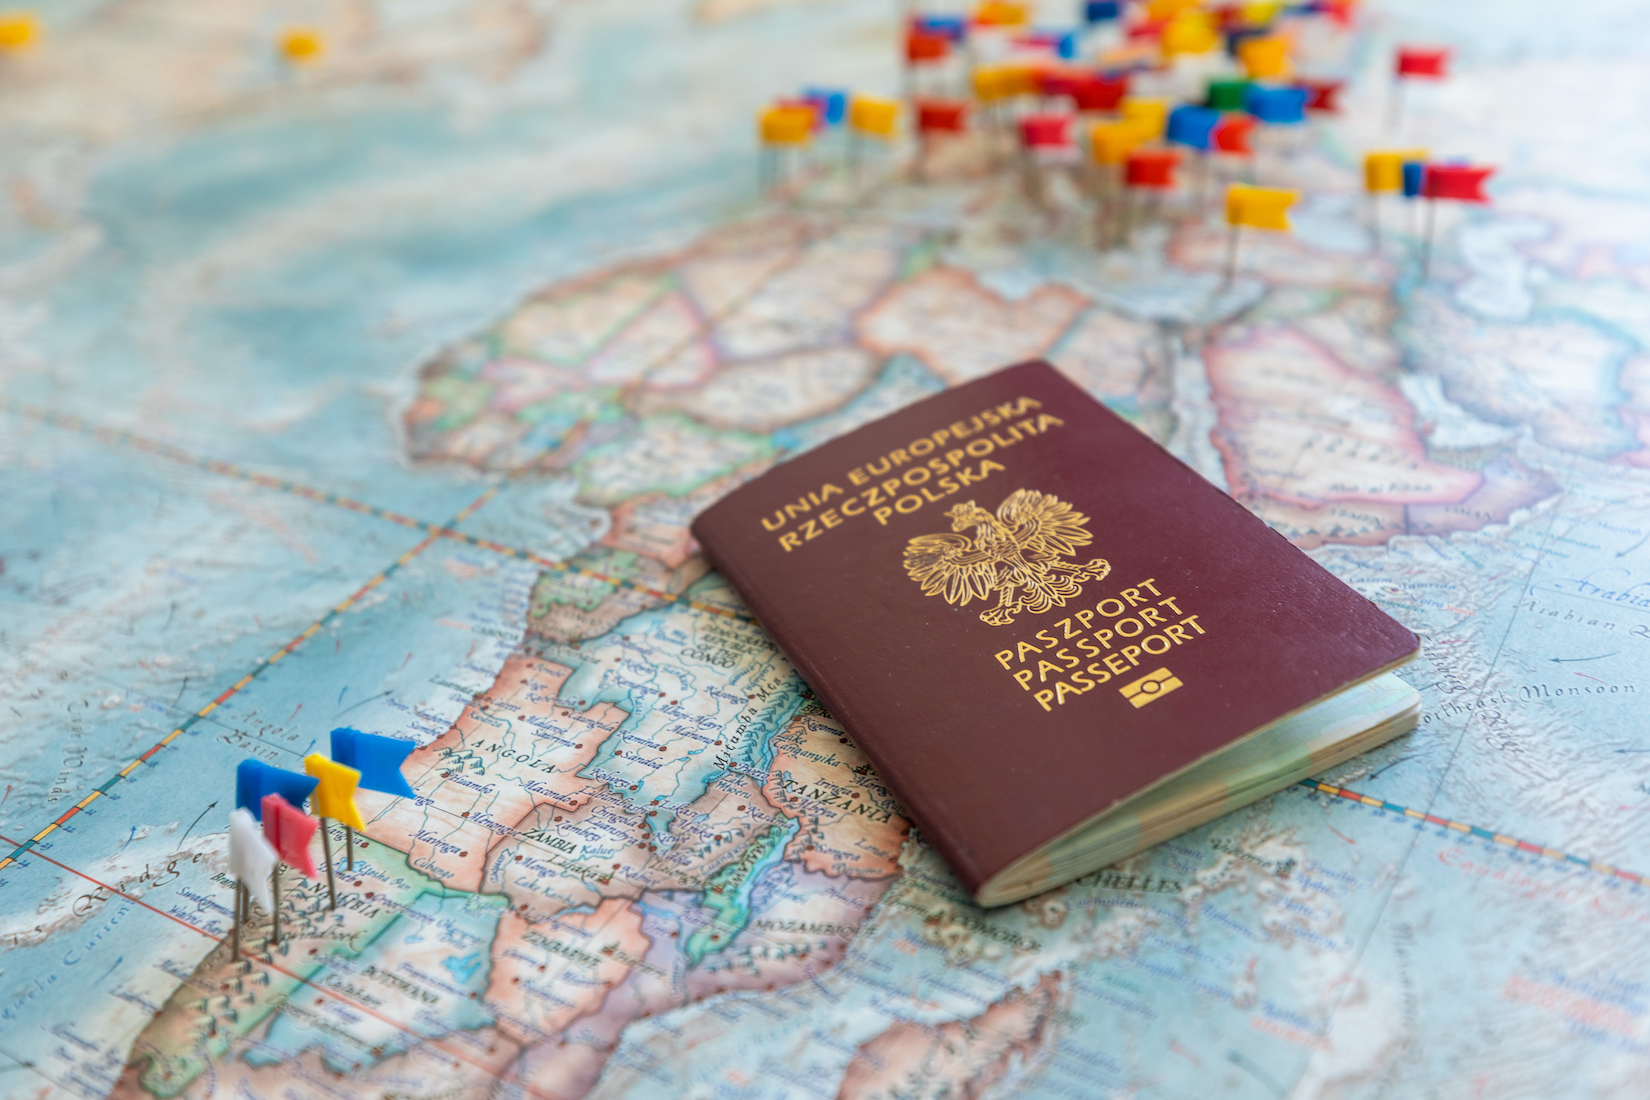 Polski paszport na tle mapy, fot. Tomasz Wozniak / Shutterstock.com